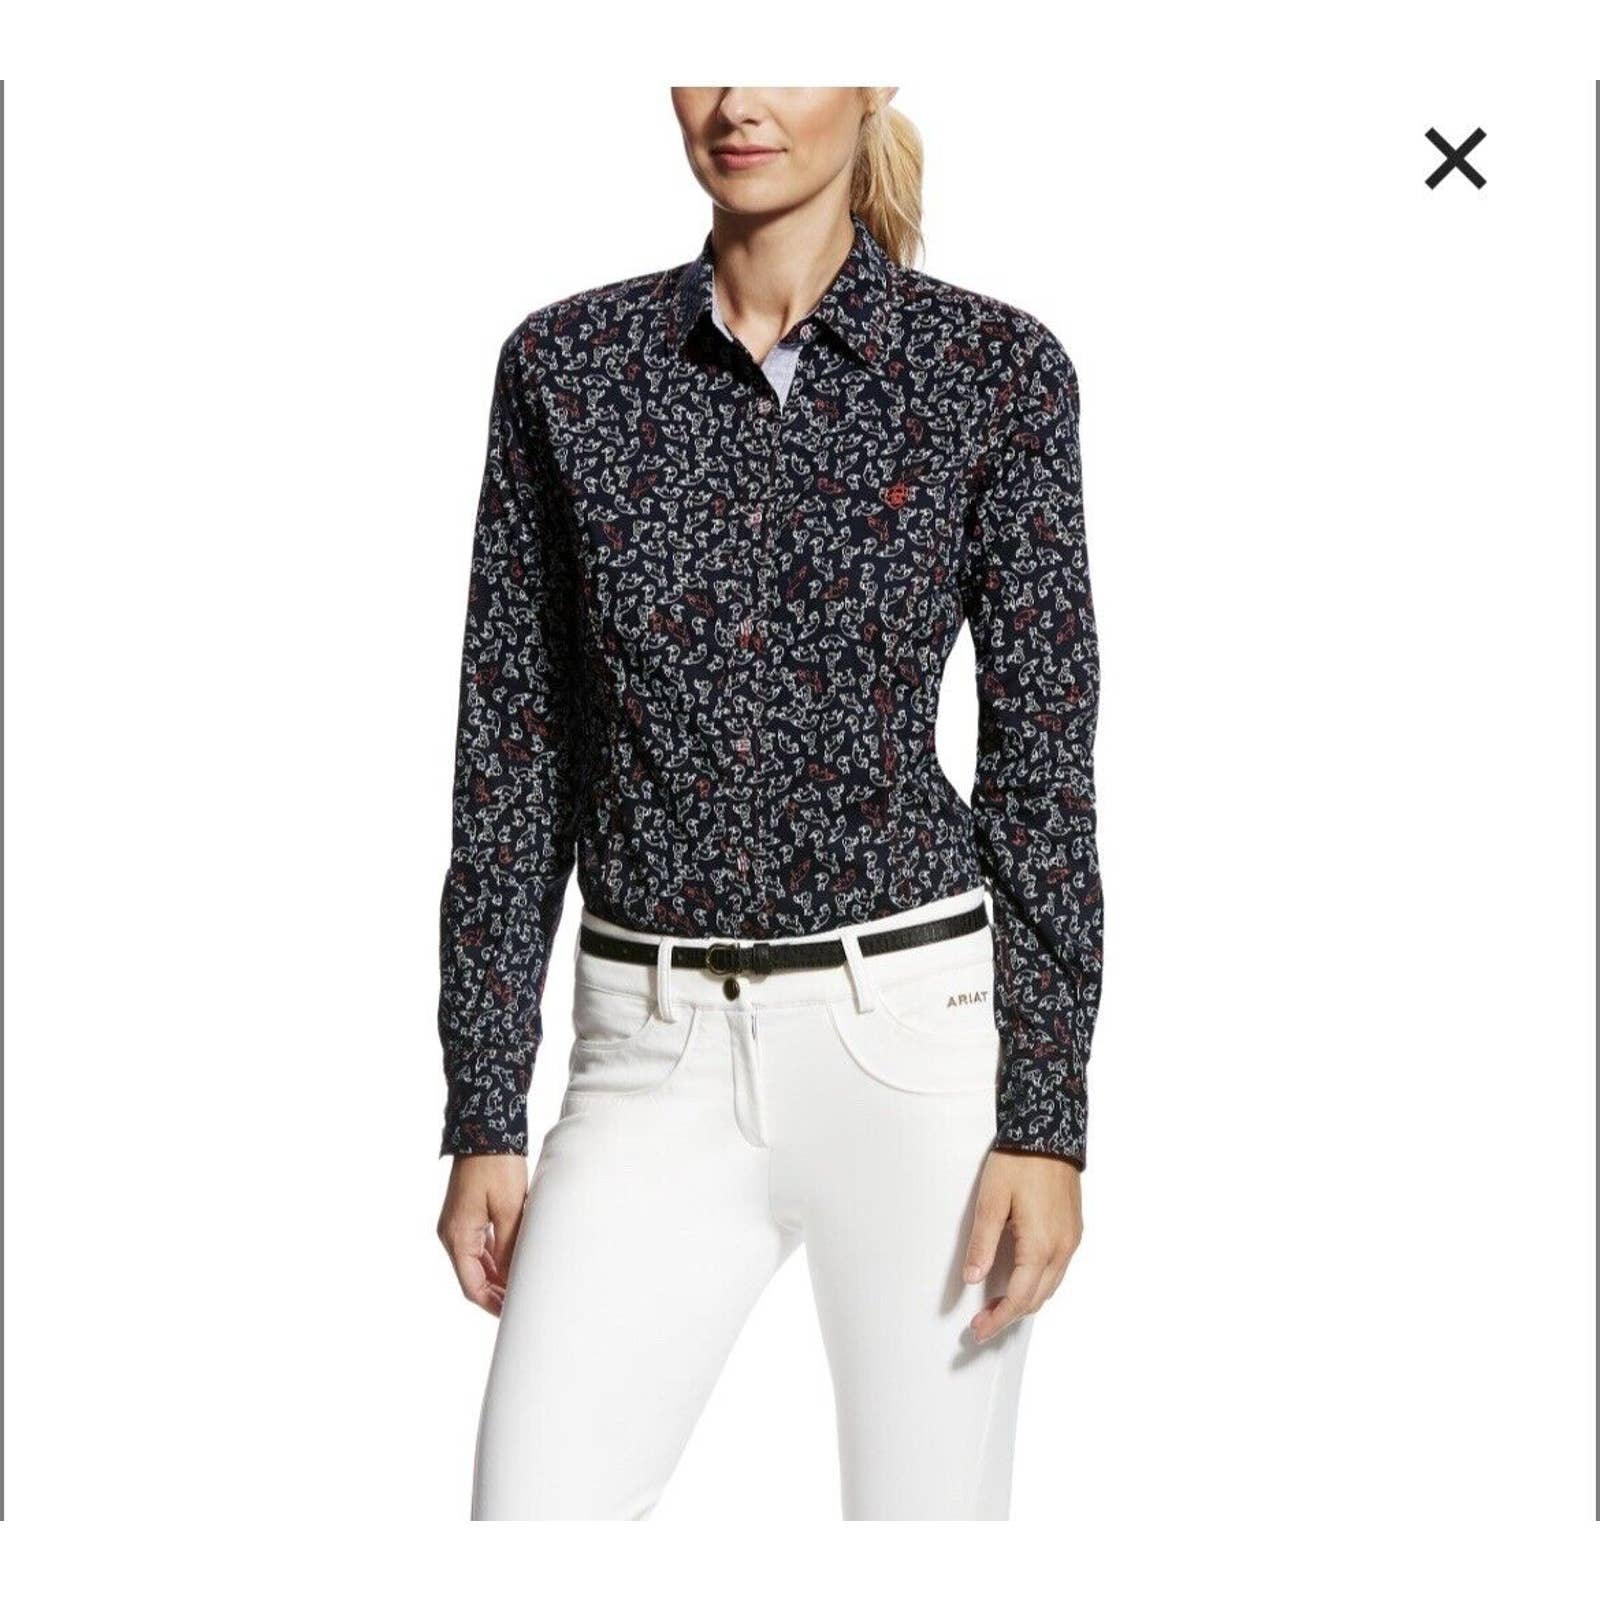 Ariat Foxy Button Up Shirt Women’s Medium Top Long Sleeves Navy Blue Cotton